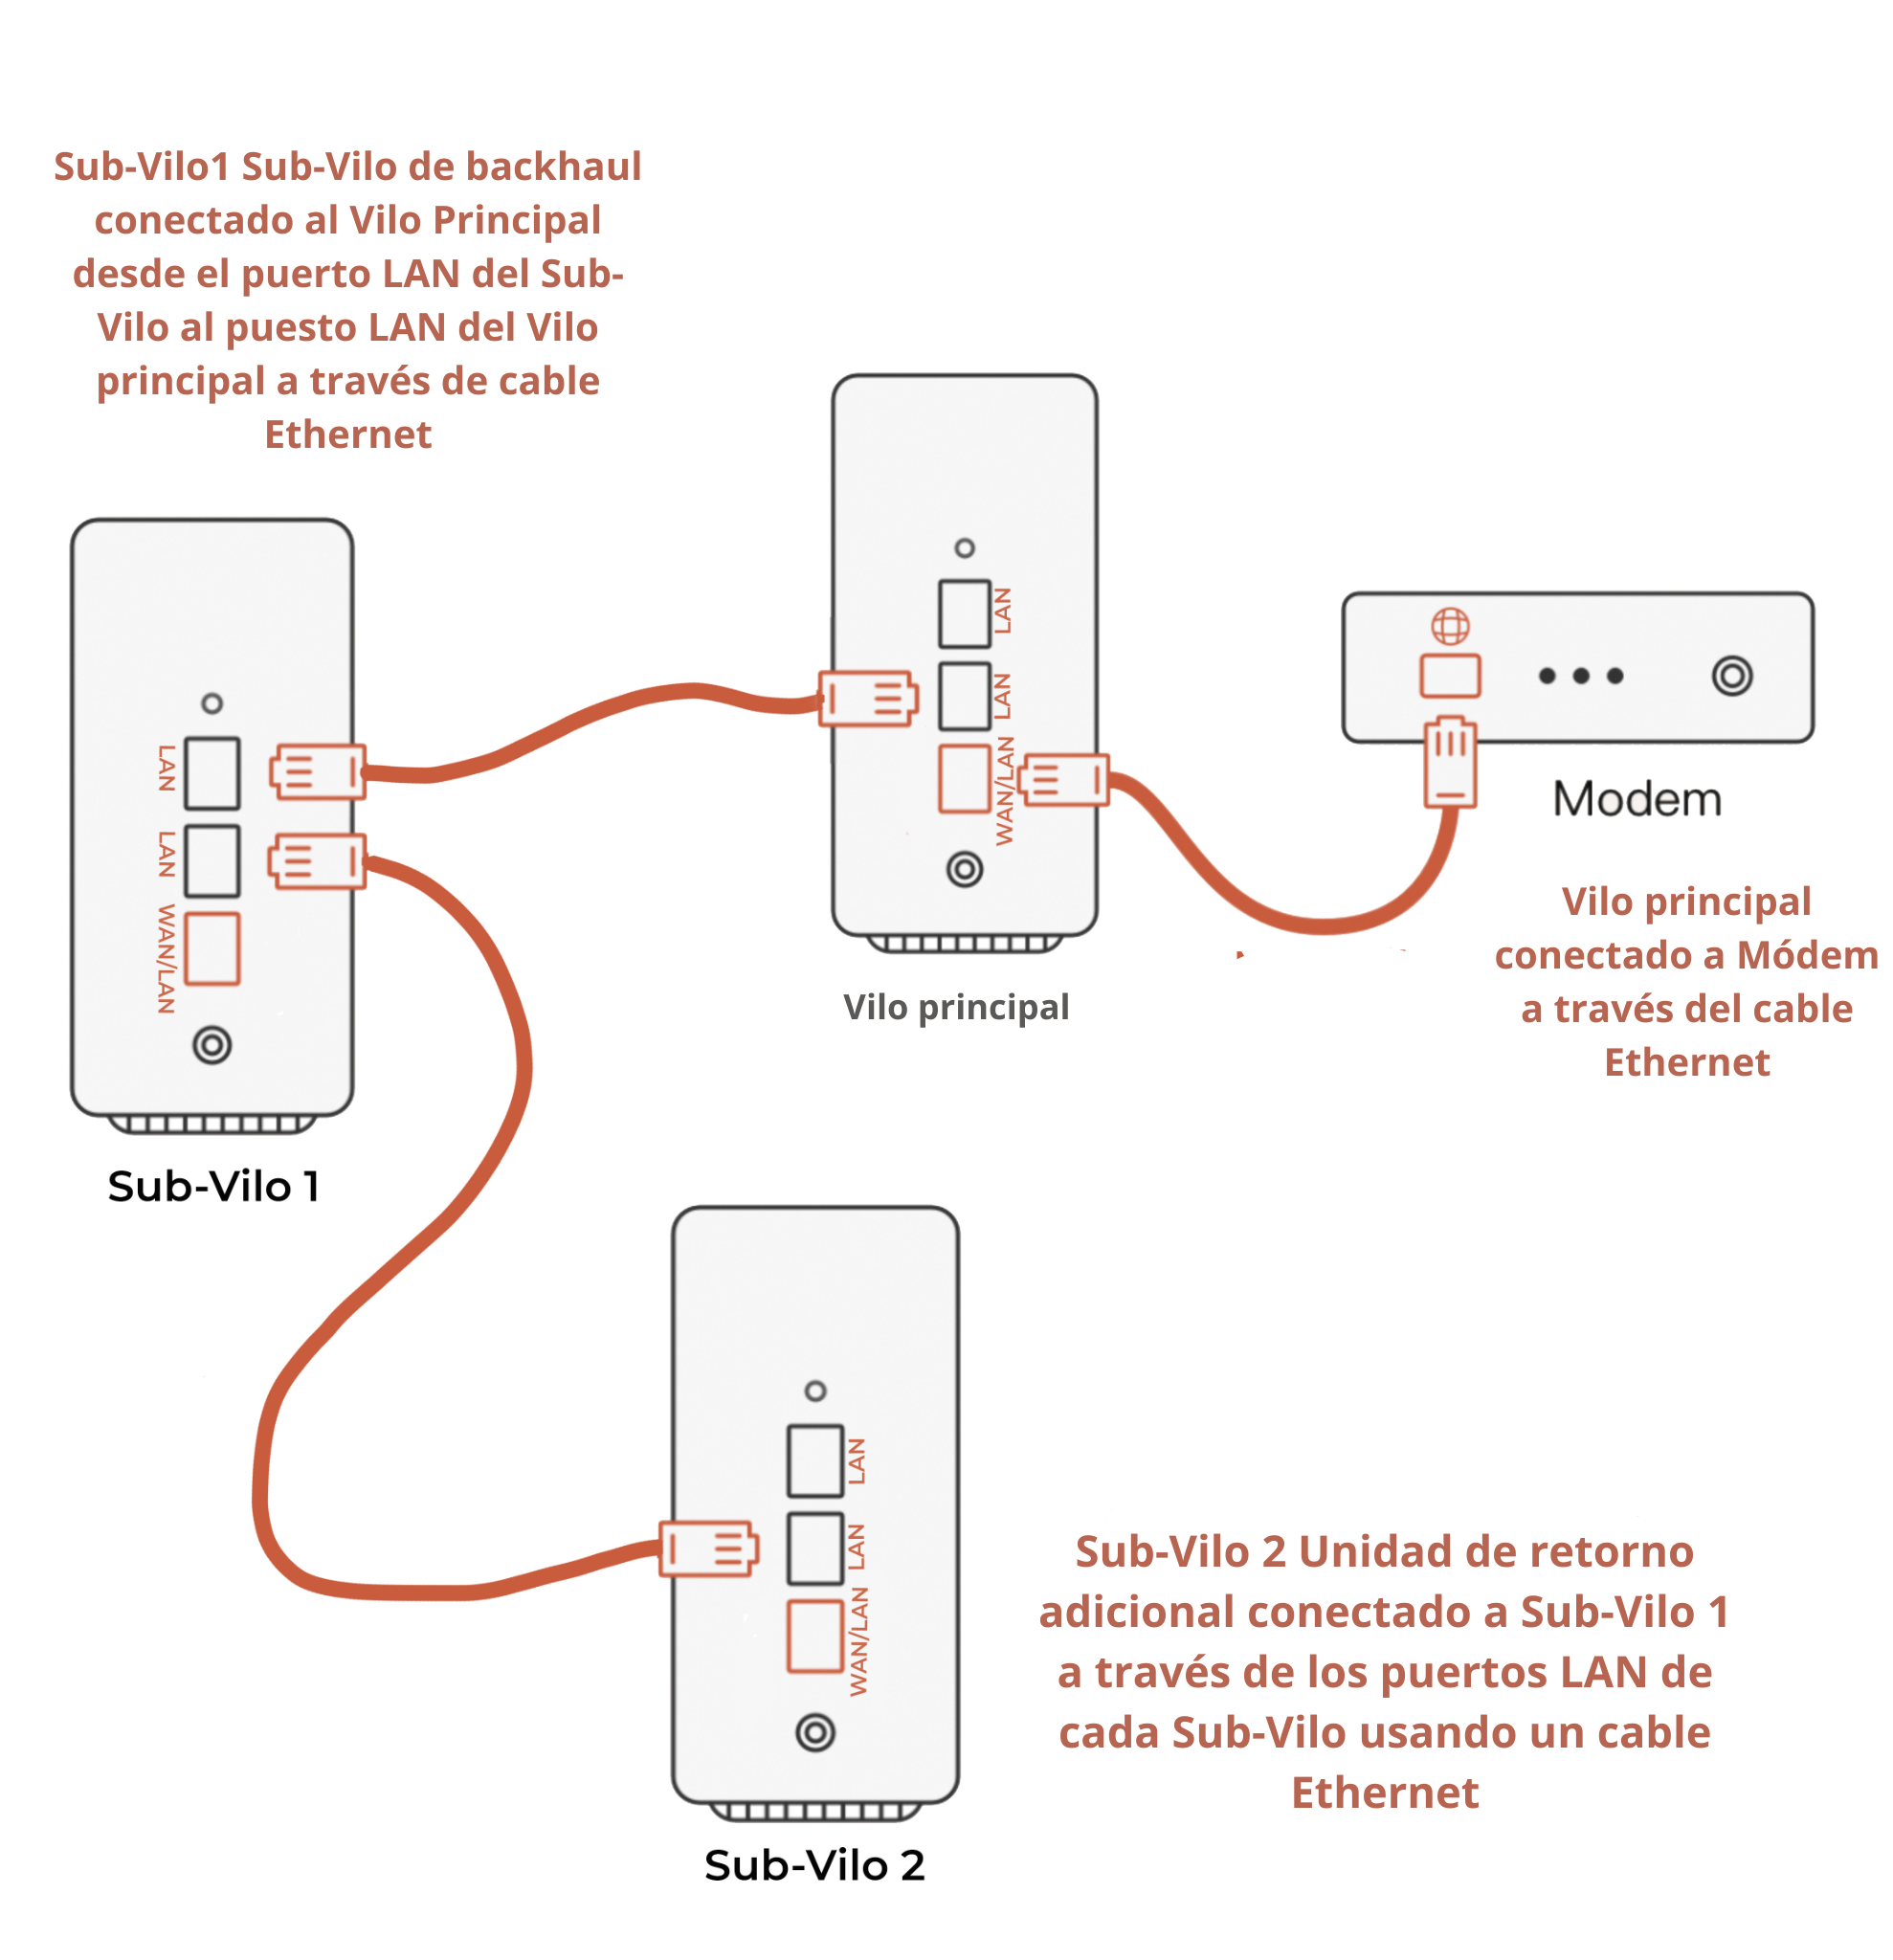 Sub-Vilo1_Sub-Vilo_de_backhaul_conectado_al_Vilo_Principal_desde_el_puerto_LAN_del_Sub-Vilo_al_puesto_LAN_del_Vilo_principal_a_trave_s_de_cable_Ethernet.png